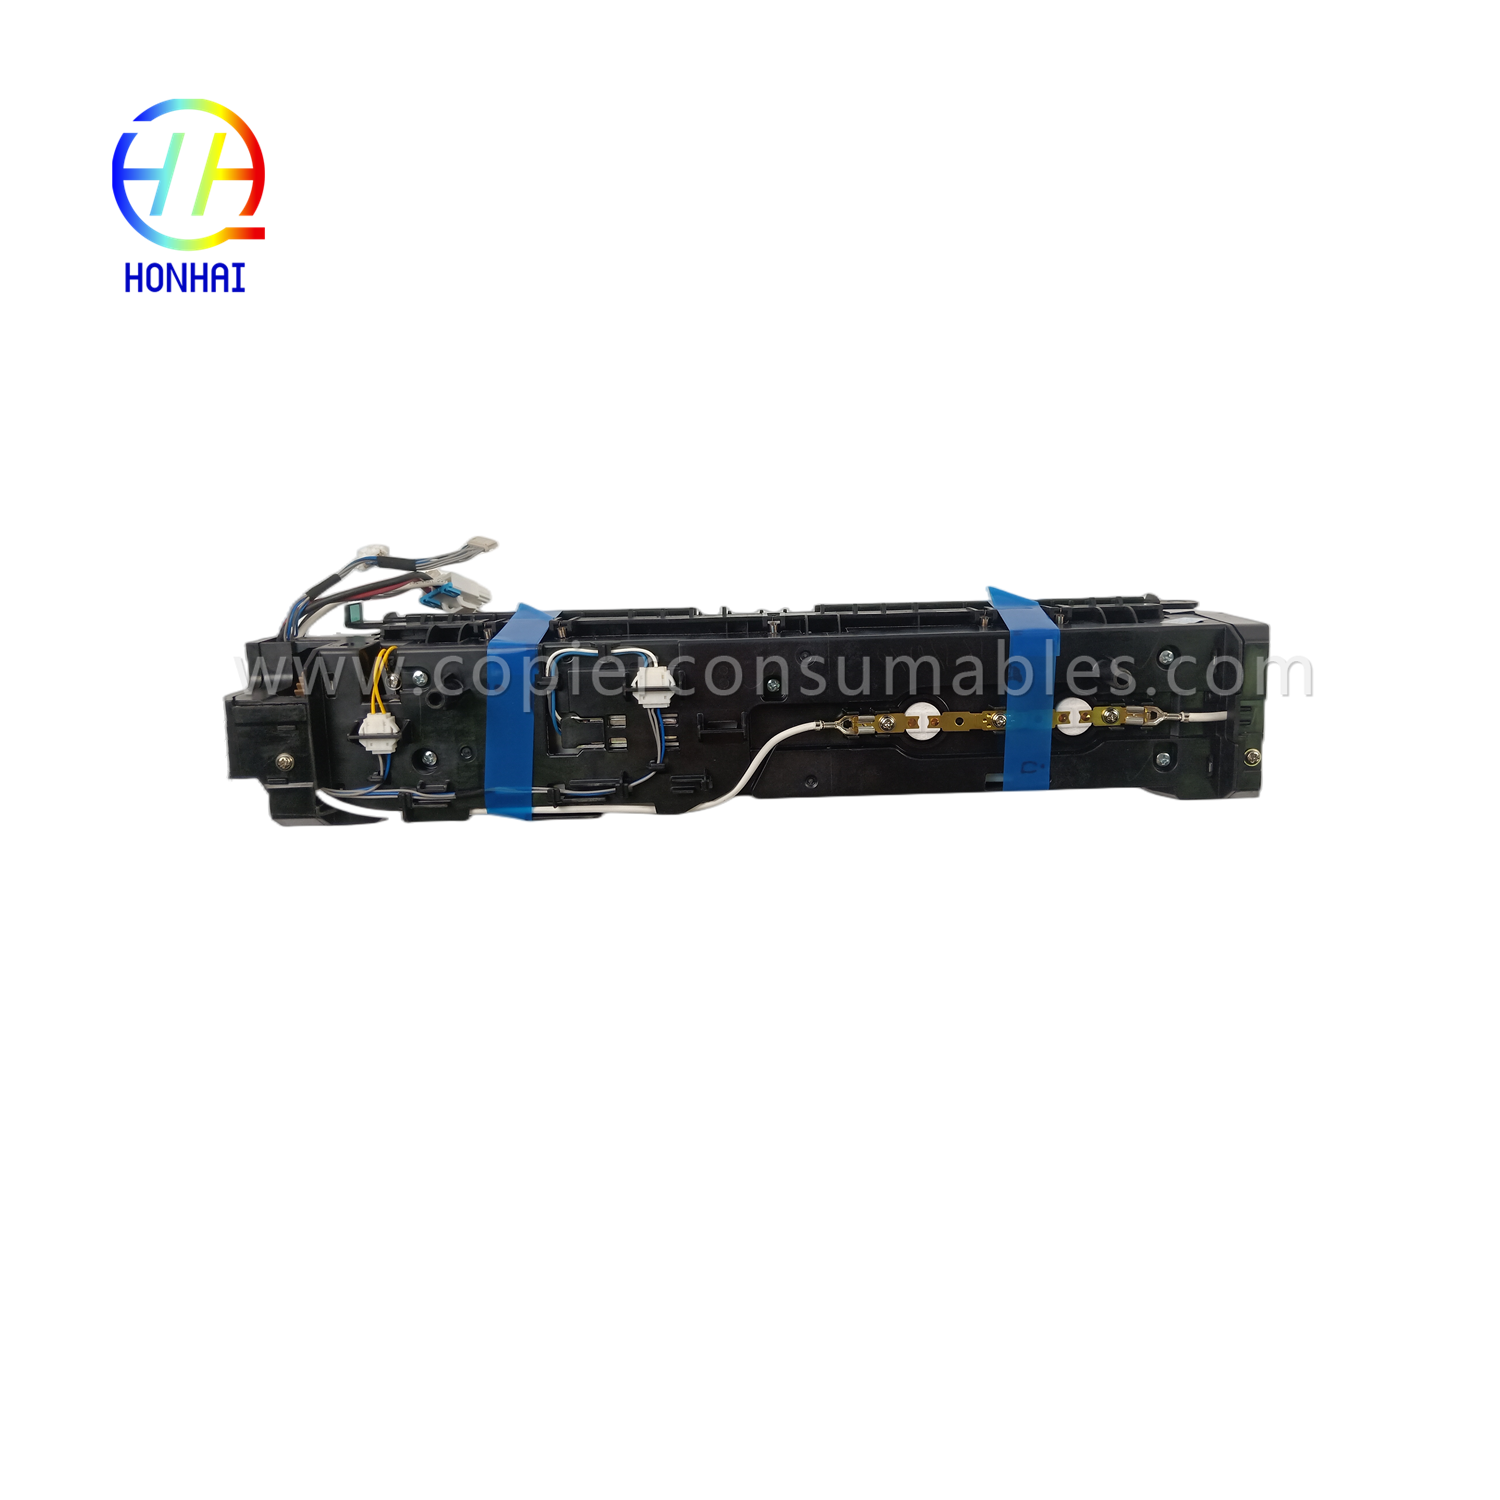 https://www.copierconsumables.com/fuser-unit-for-samsung-jc91-01211a-jc9101211a-sl-k3300-3250-fuser-assemble-product/